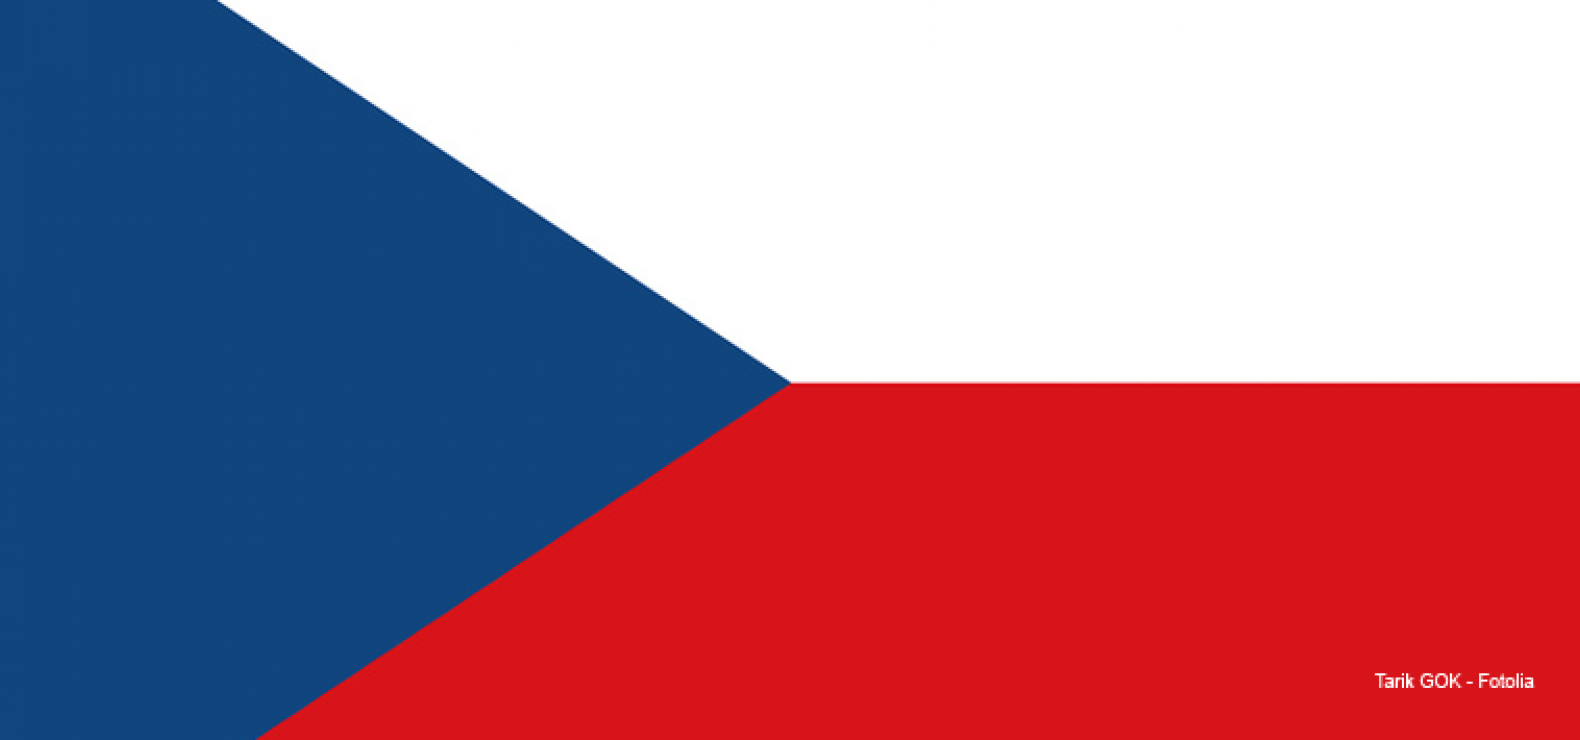 Tschechische Flagge mit einem roten und einem weißen Balken sowie einem blauen Dreieck am linken Rand